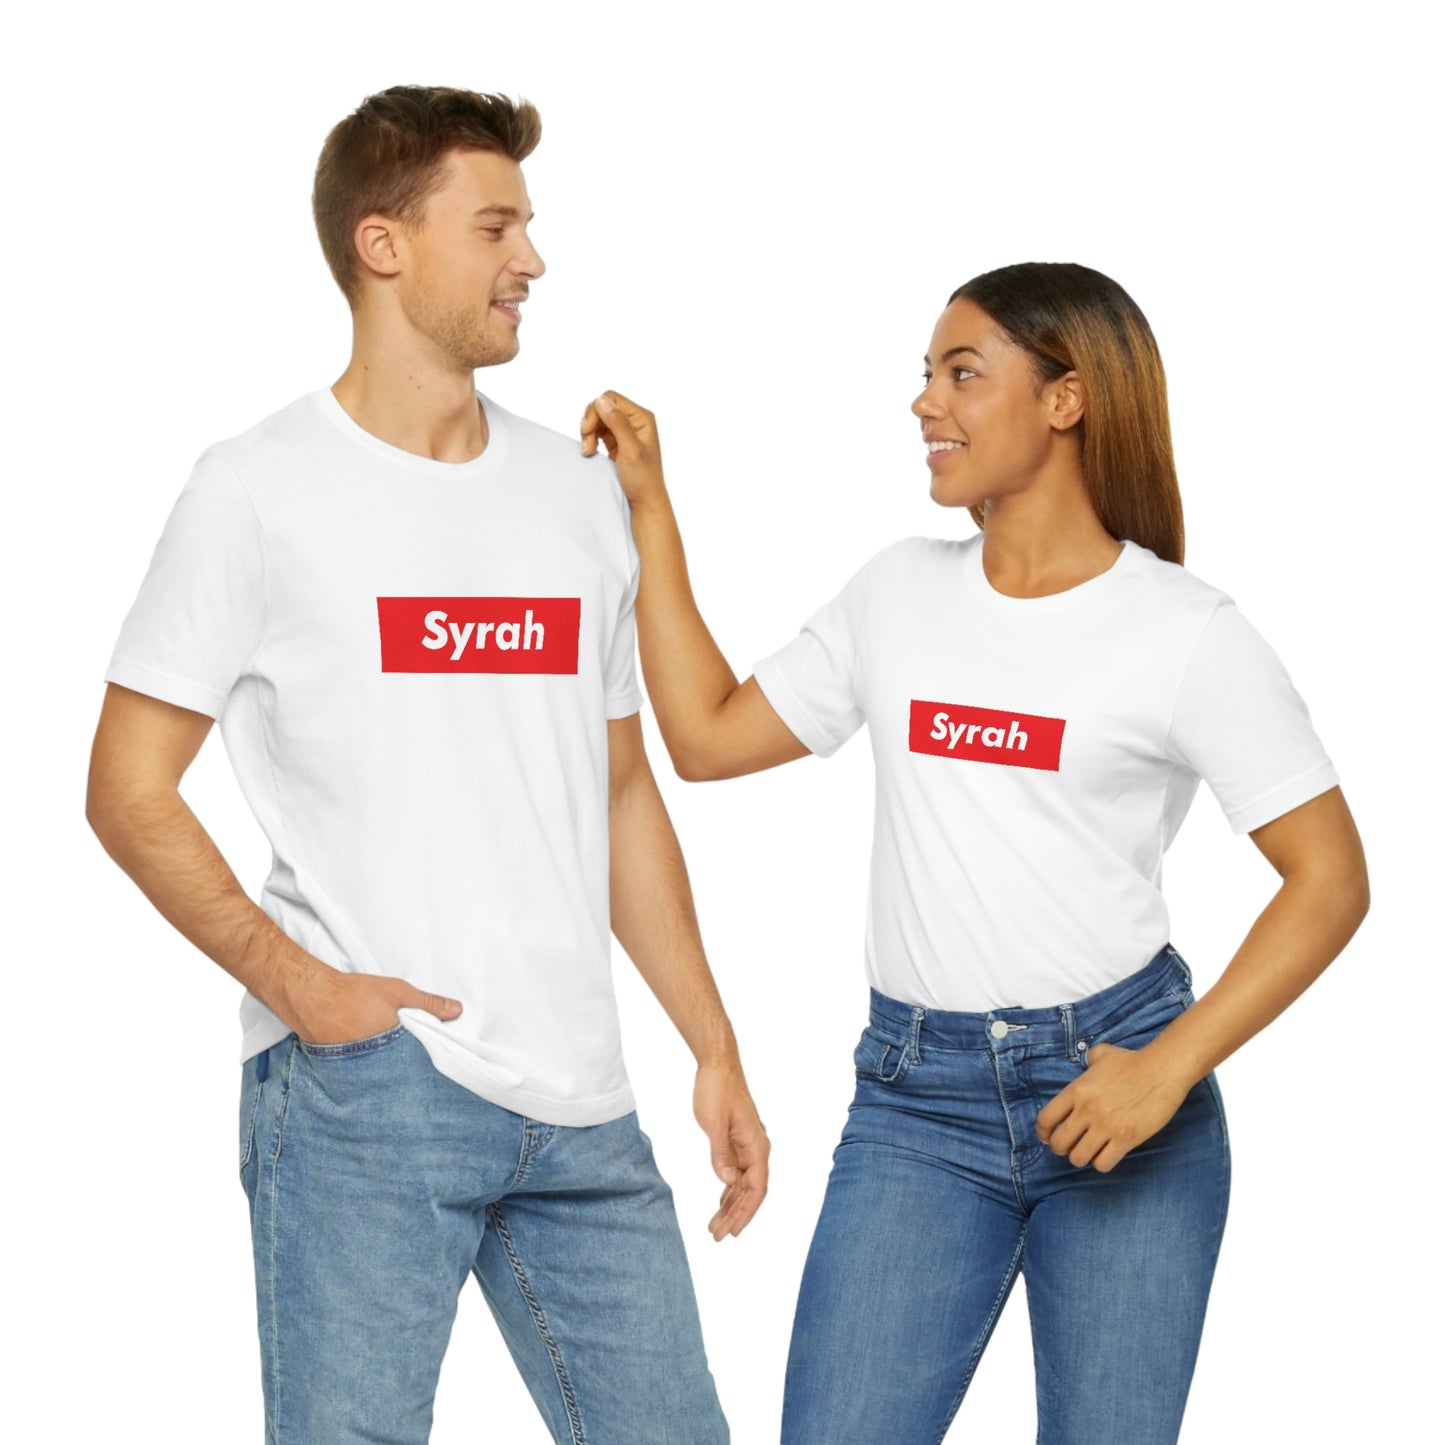 Syrah T-shirt